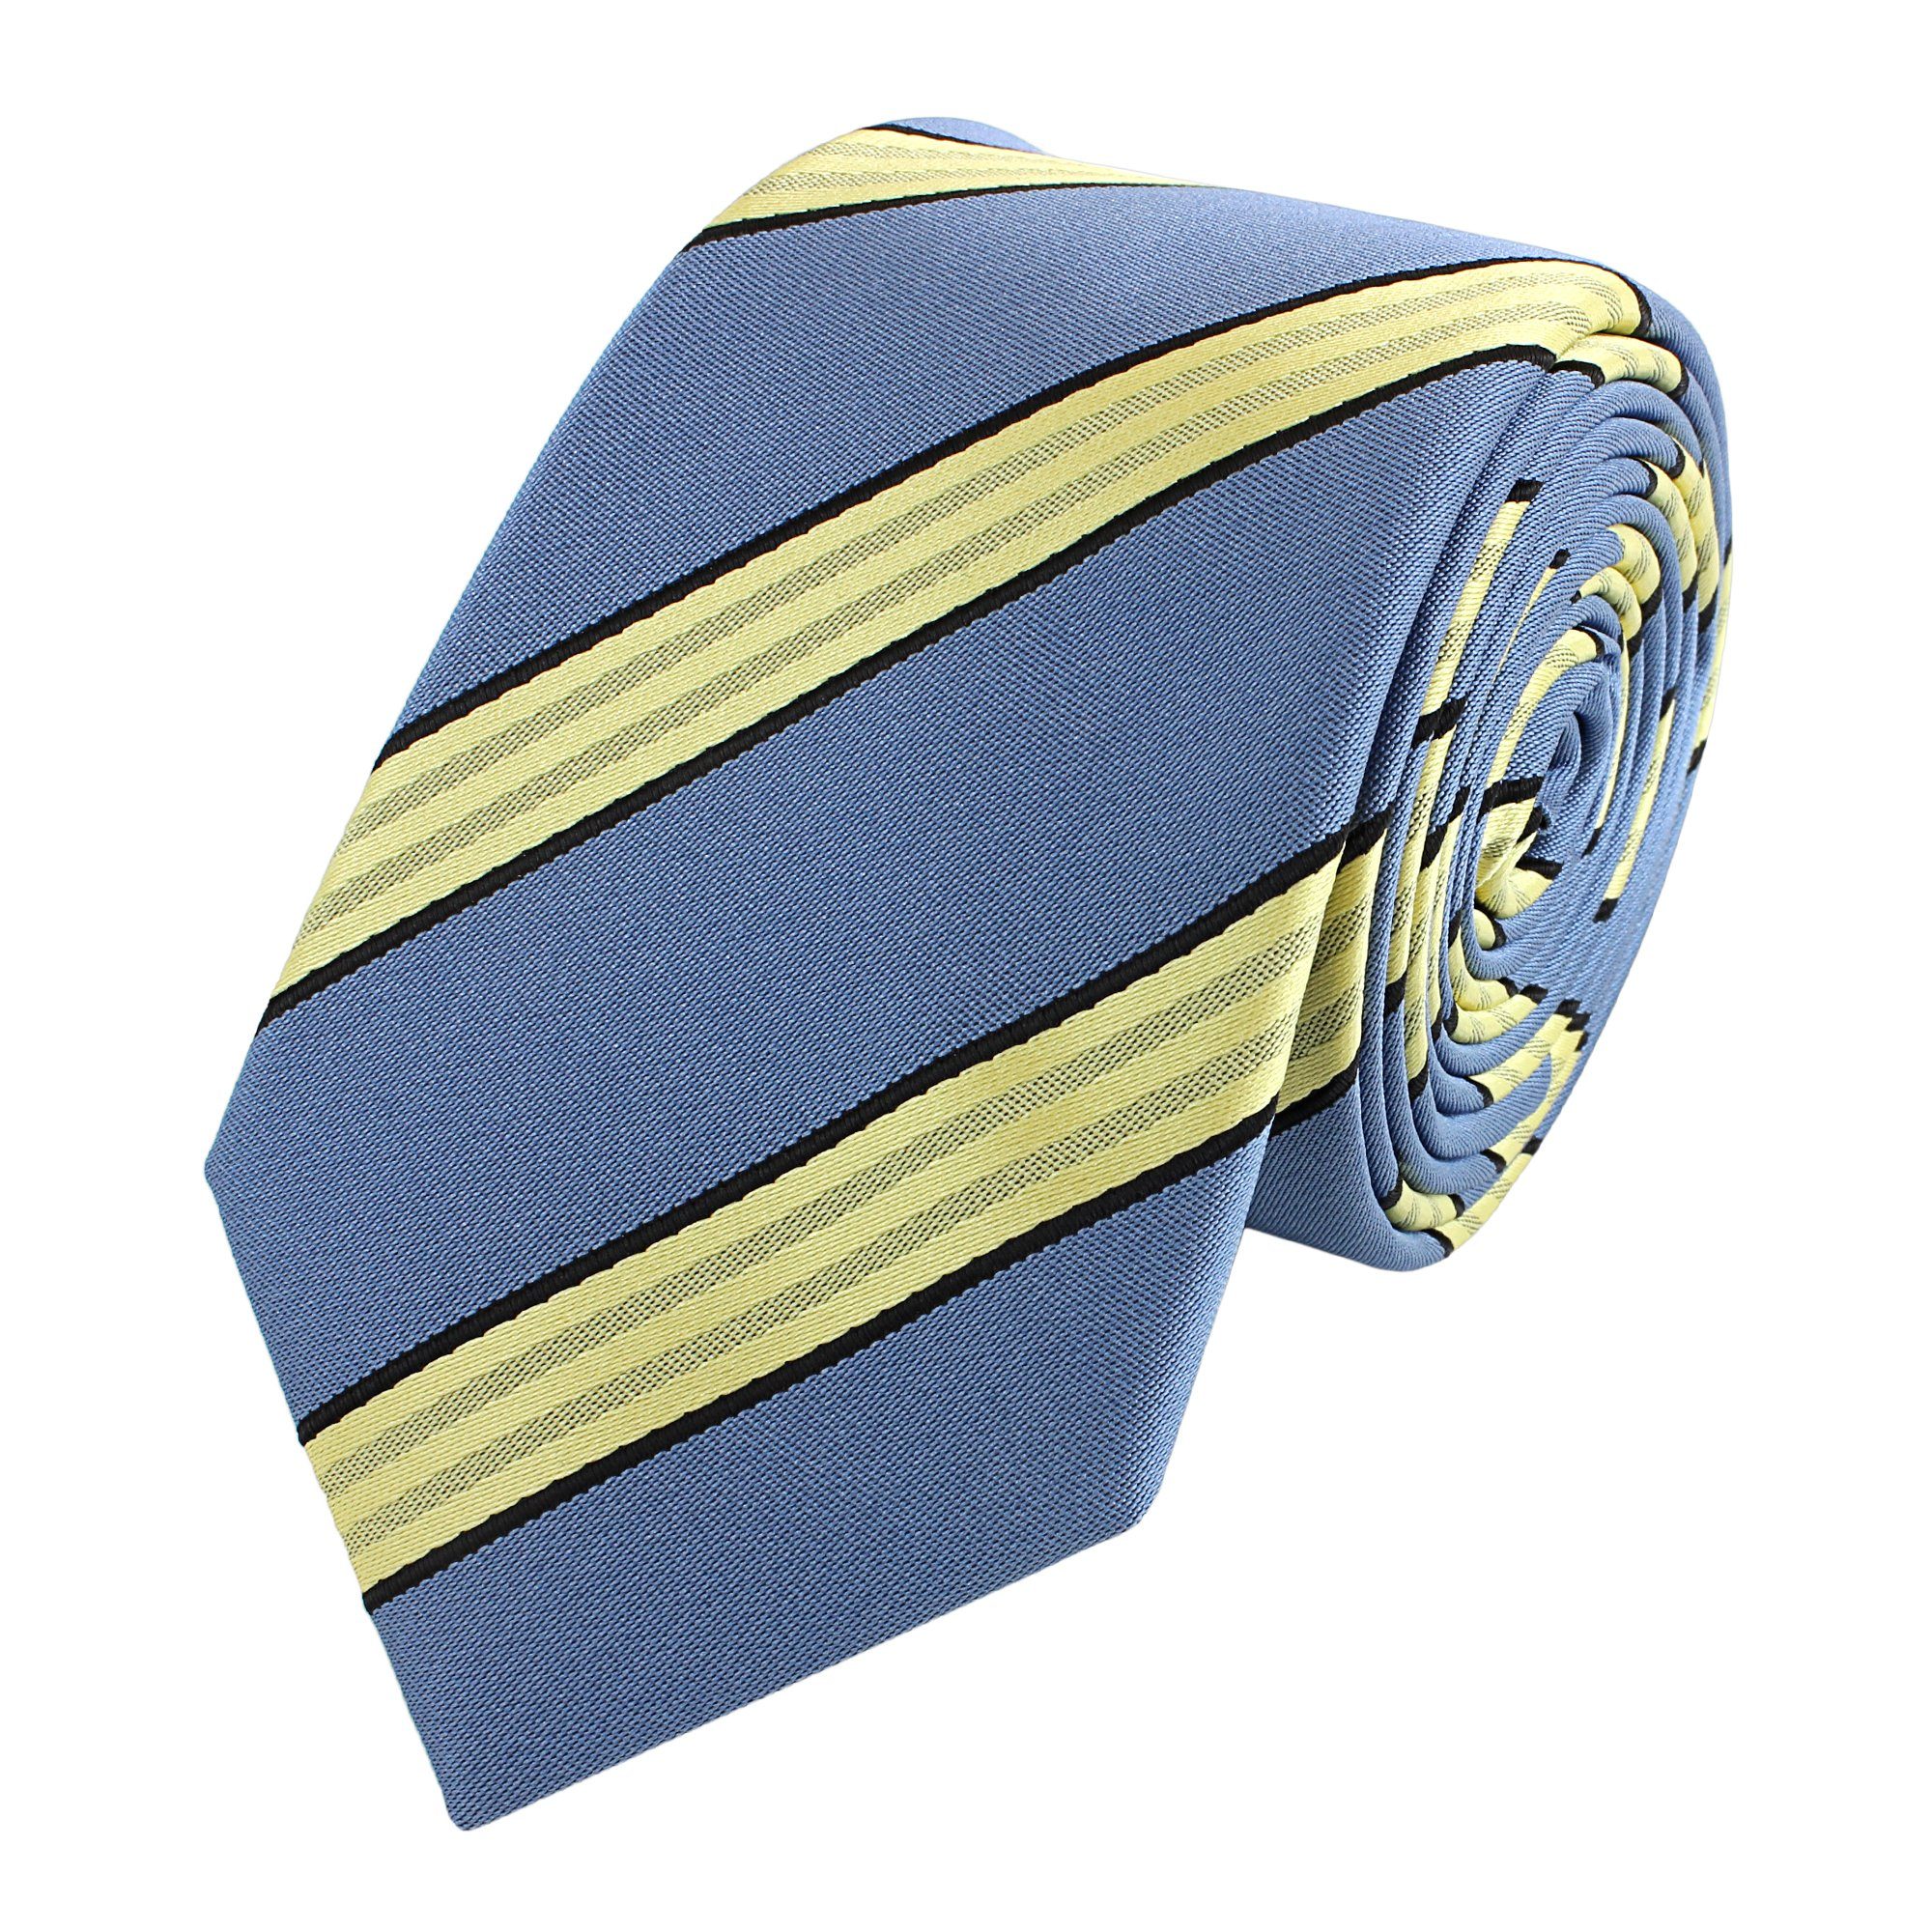 Fabio Farini Krawatte Herren Krawatte Blautöne - verschiedene Blaue Männer Schlips in 6cm (ohne Box, Gestreift) Schmal (6cm), Blau Gelb - Glacier Blue/Creamed Butter/Black